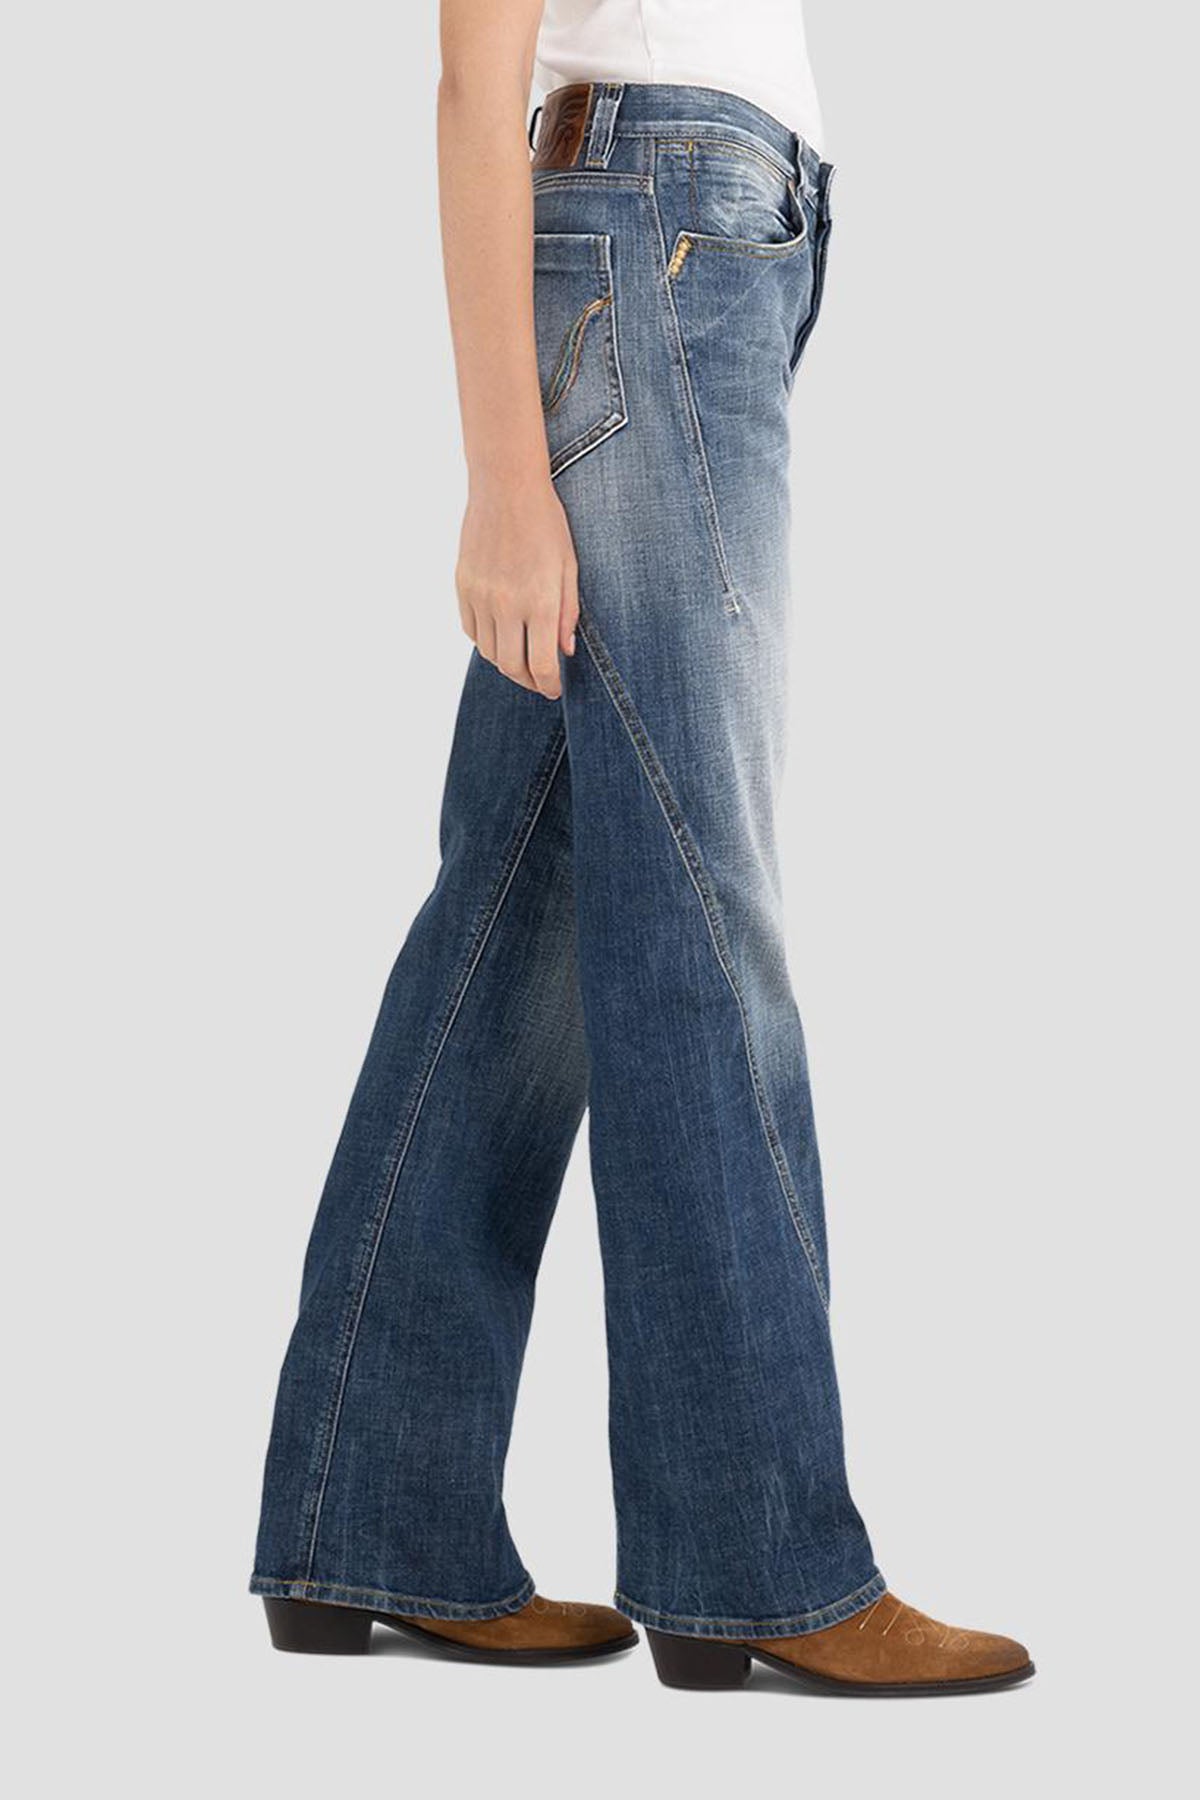 Replay Bootcut Yıkamalı Jeans-Libas Trendy Fashion Store